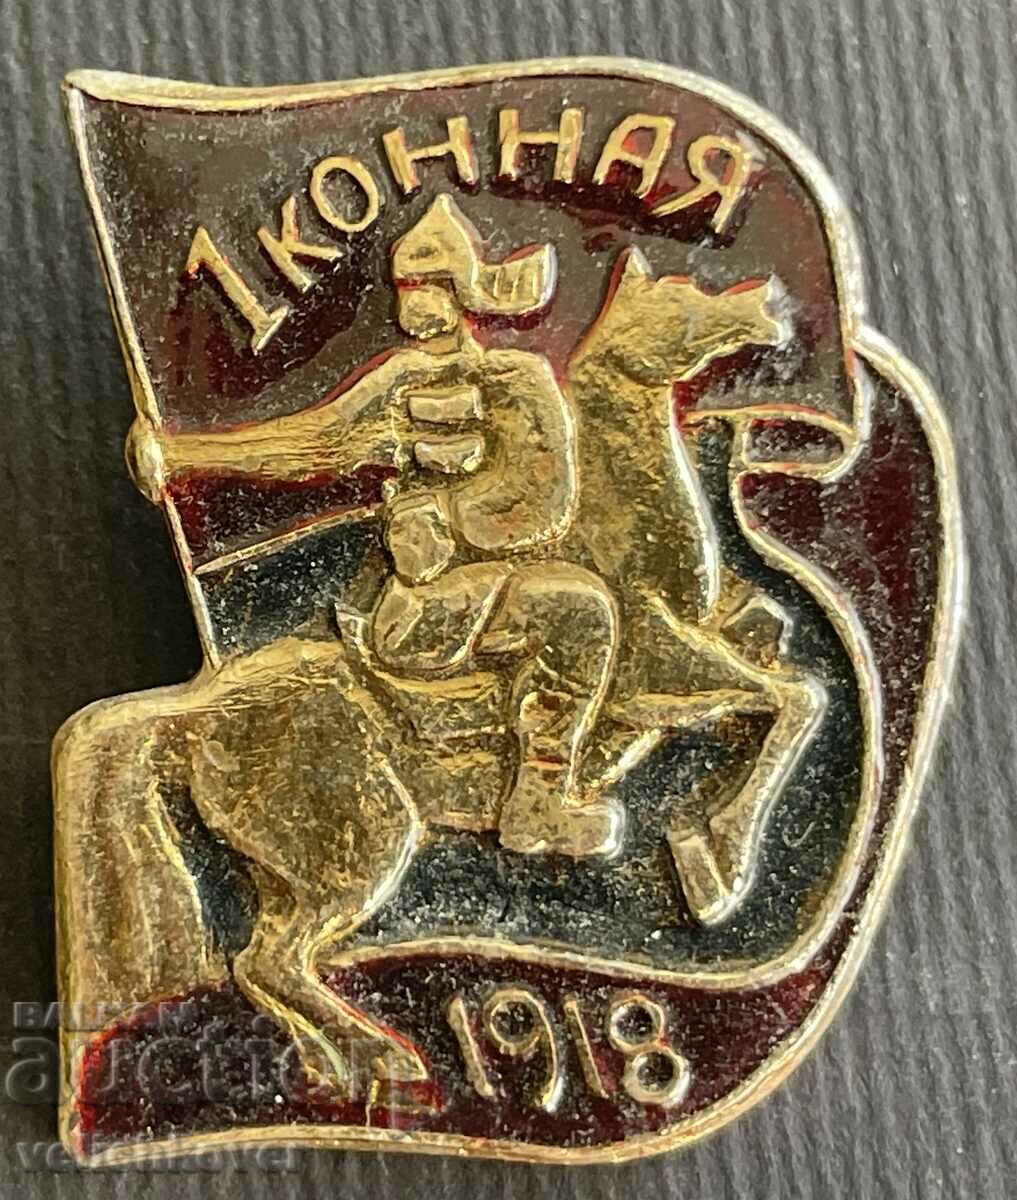 36266 Σήμα ΕΣΣΔ πρώτος στρατός ιππικού Μπουντιόνι 1918.